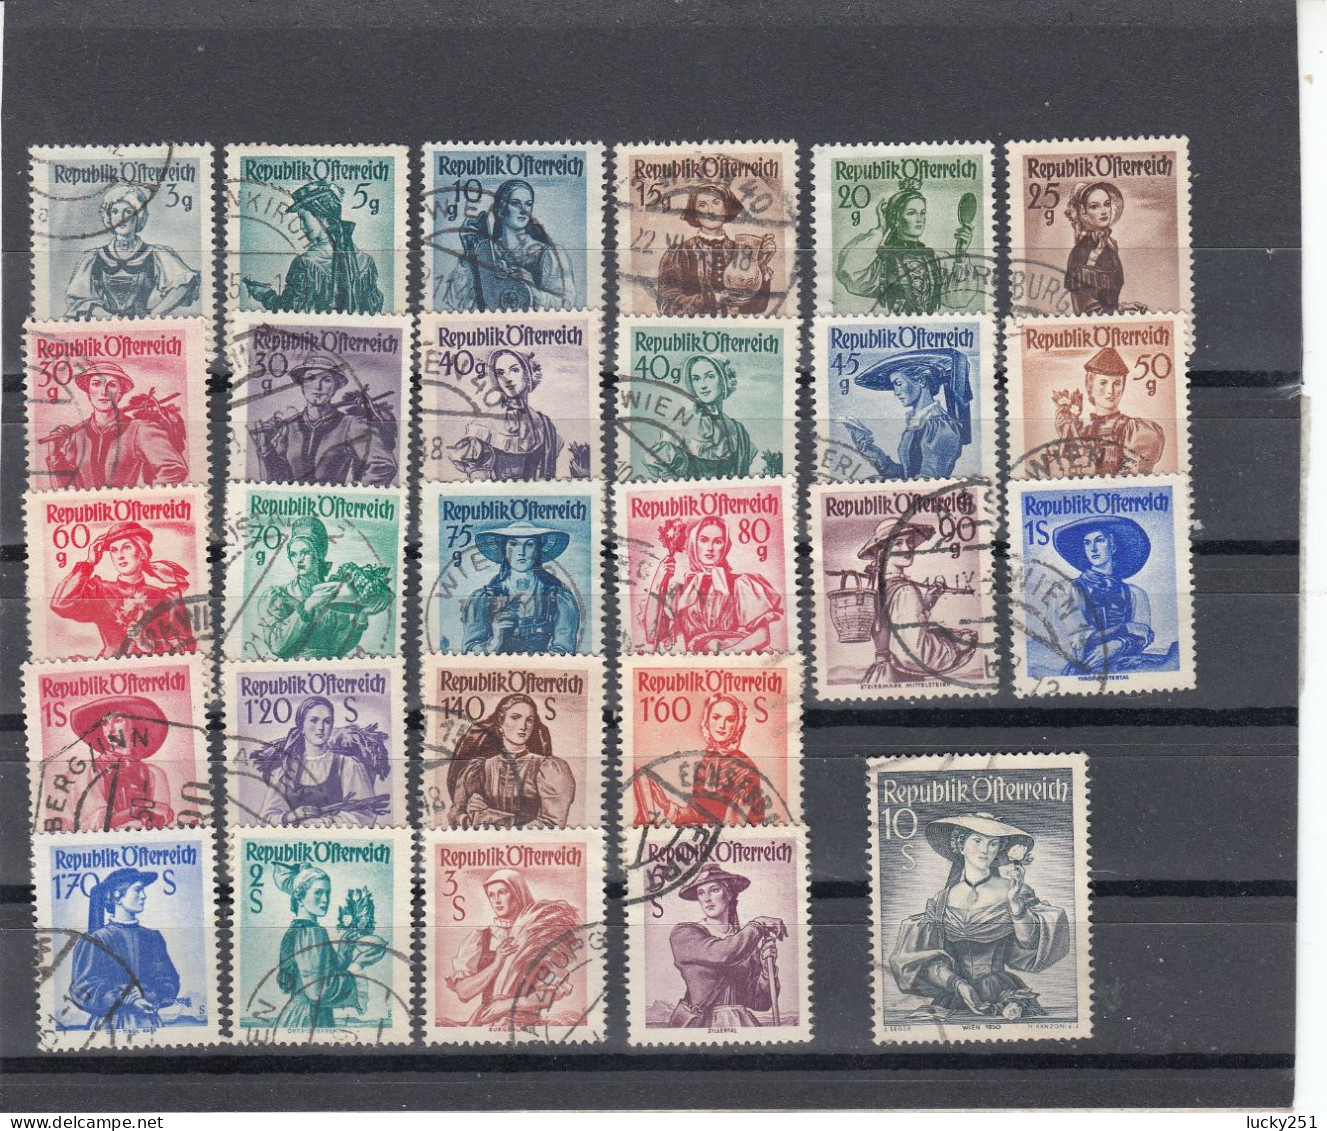 Autriche - Année 1948/50 - Obl. - N°YT 738A à 754A - Costumes Régionaux Divers - Used Stamps